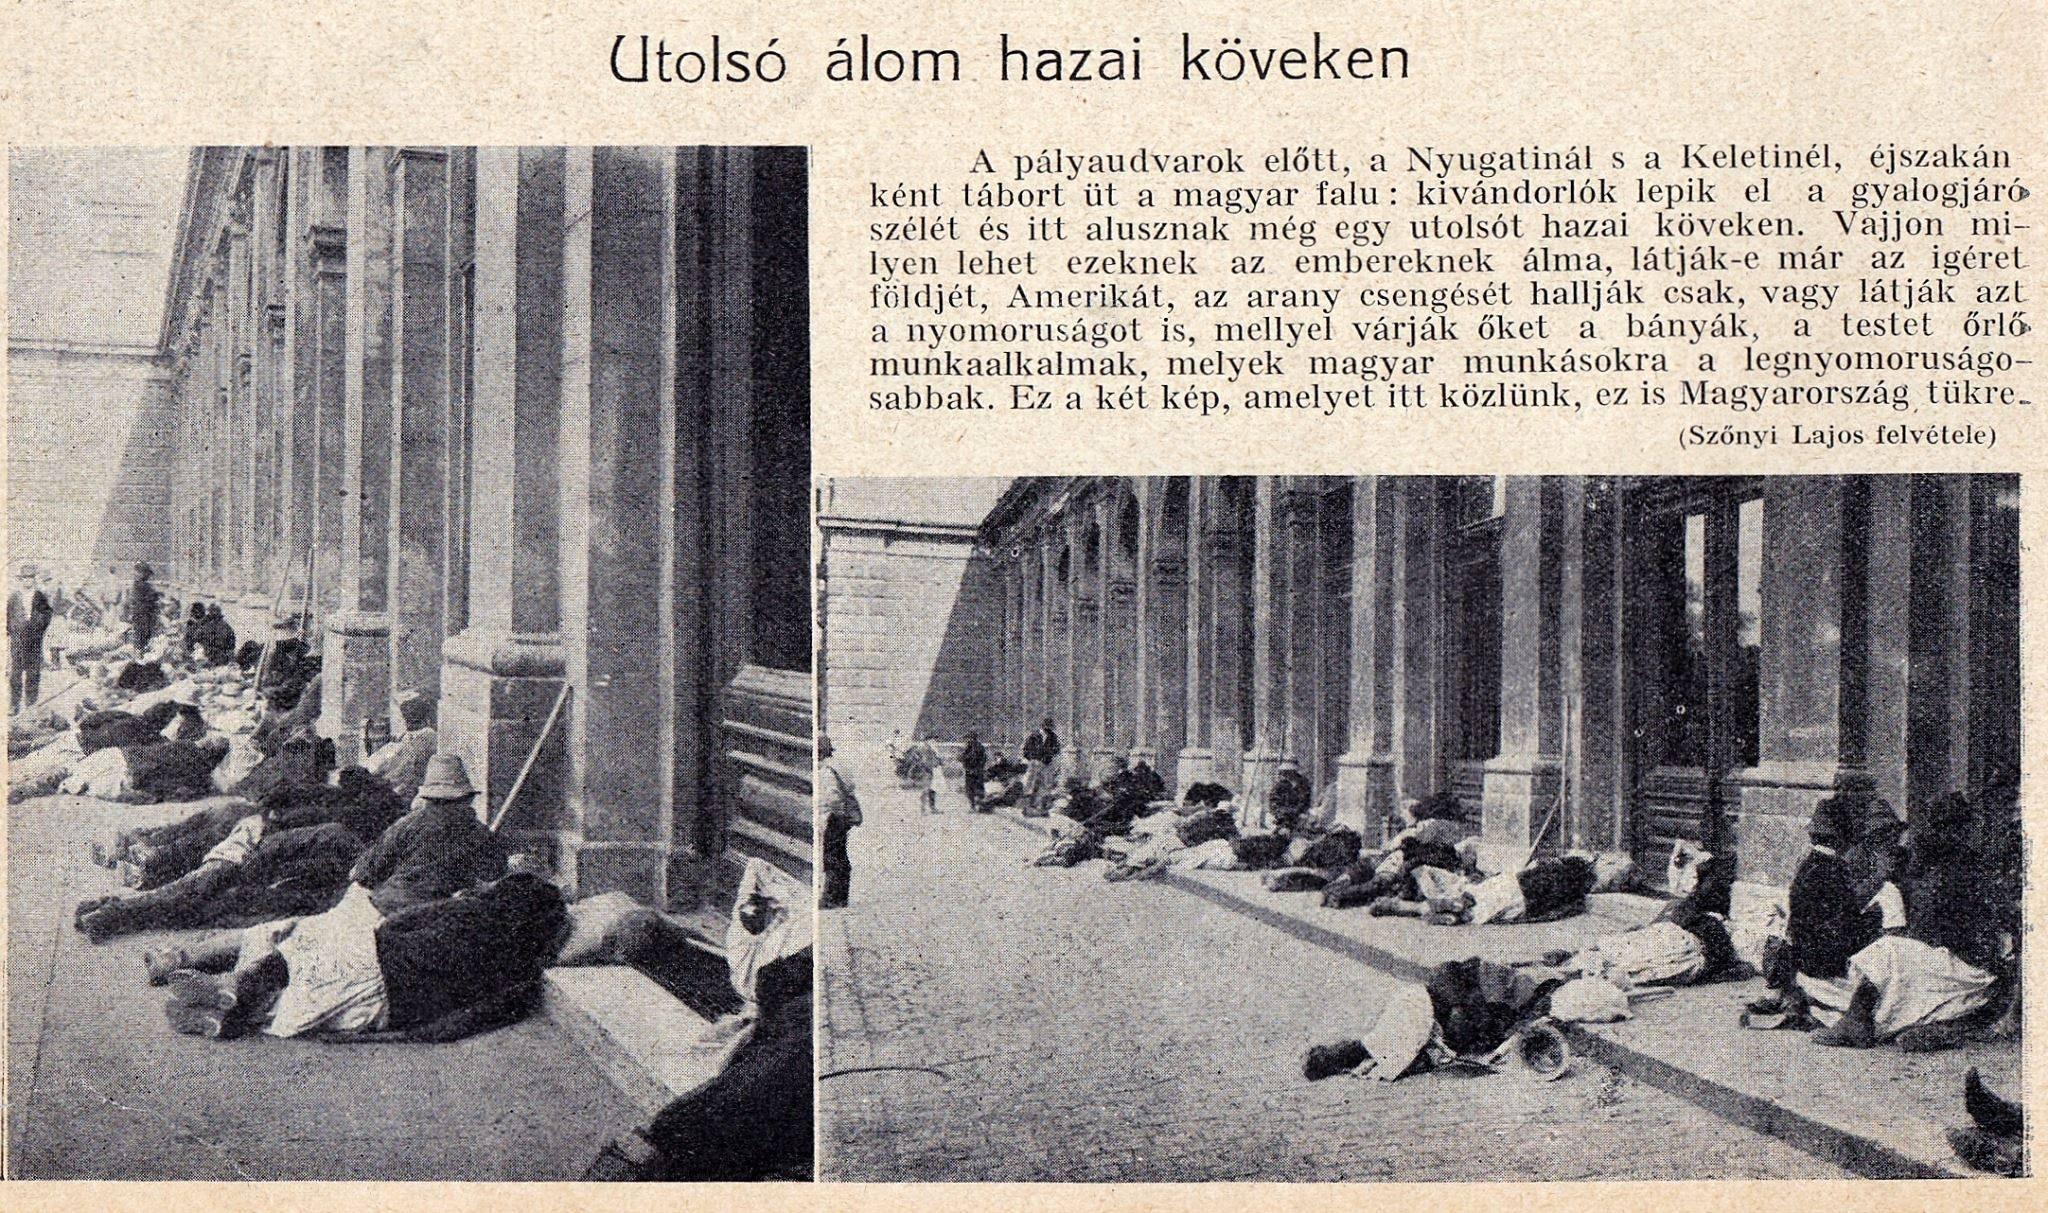 Pályaudvarok előtt alvó kivándorlók 1913-ban az Érdekes Újságban